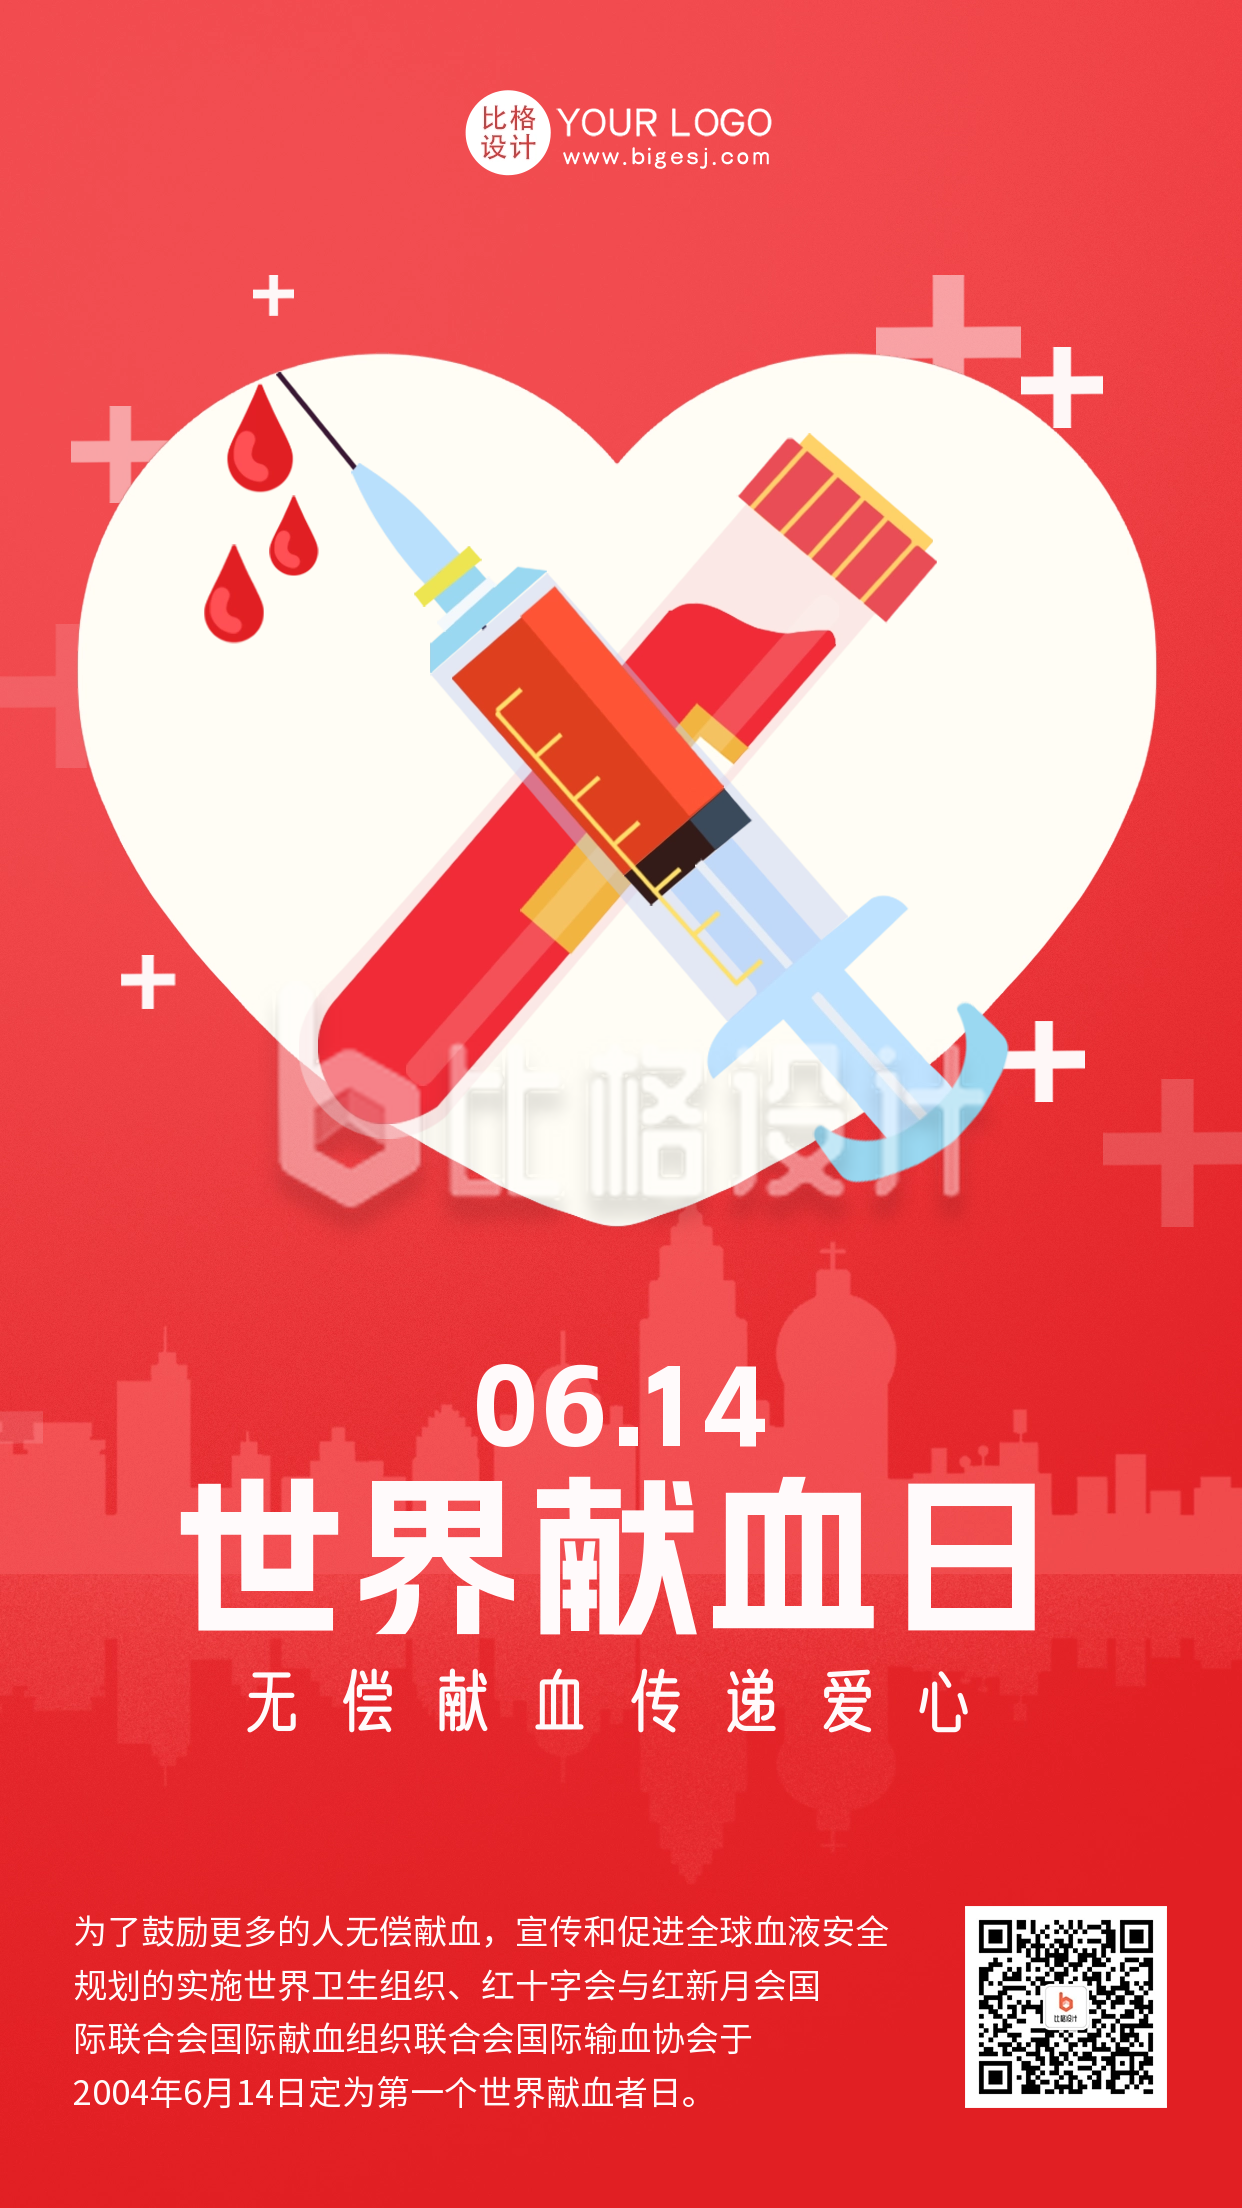 红色简约风献血日宣传手机海报